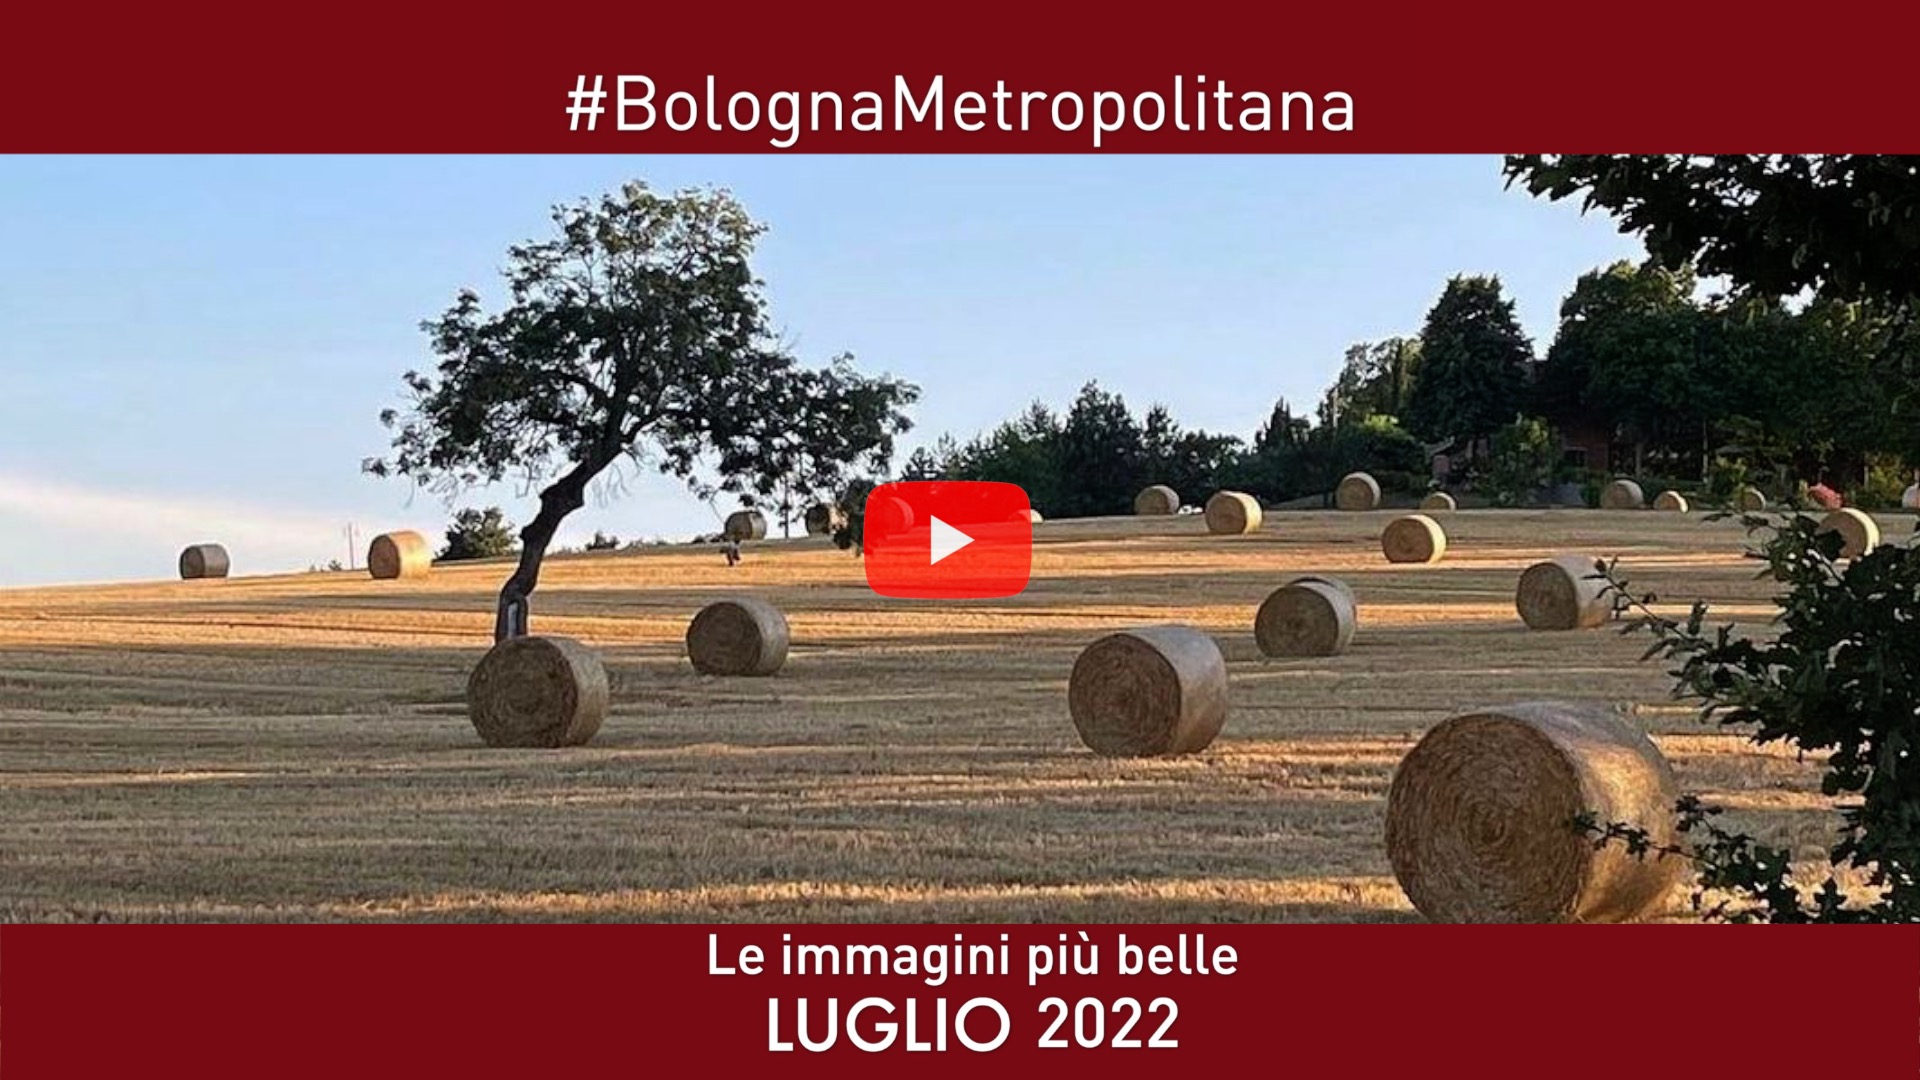 #BolognaMetropolitana - Le immagini più belle di Luglio 2022